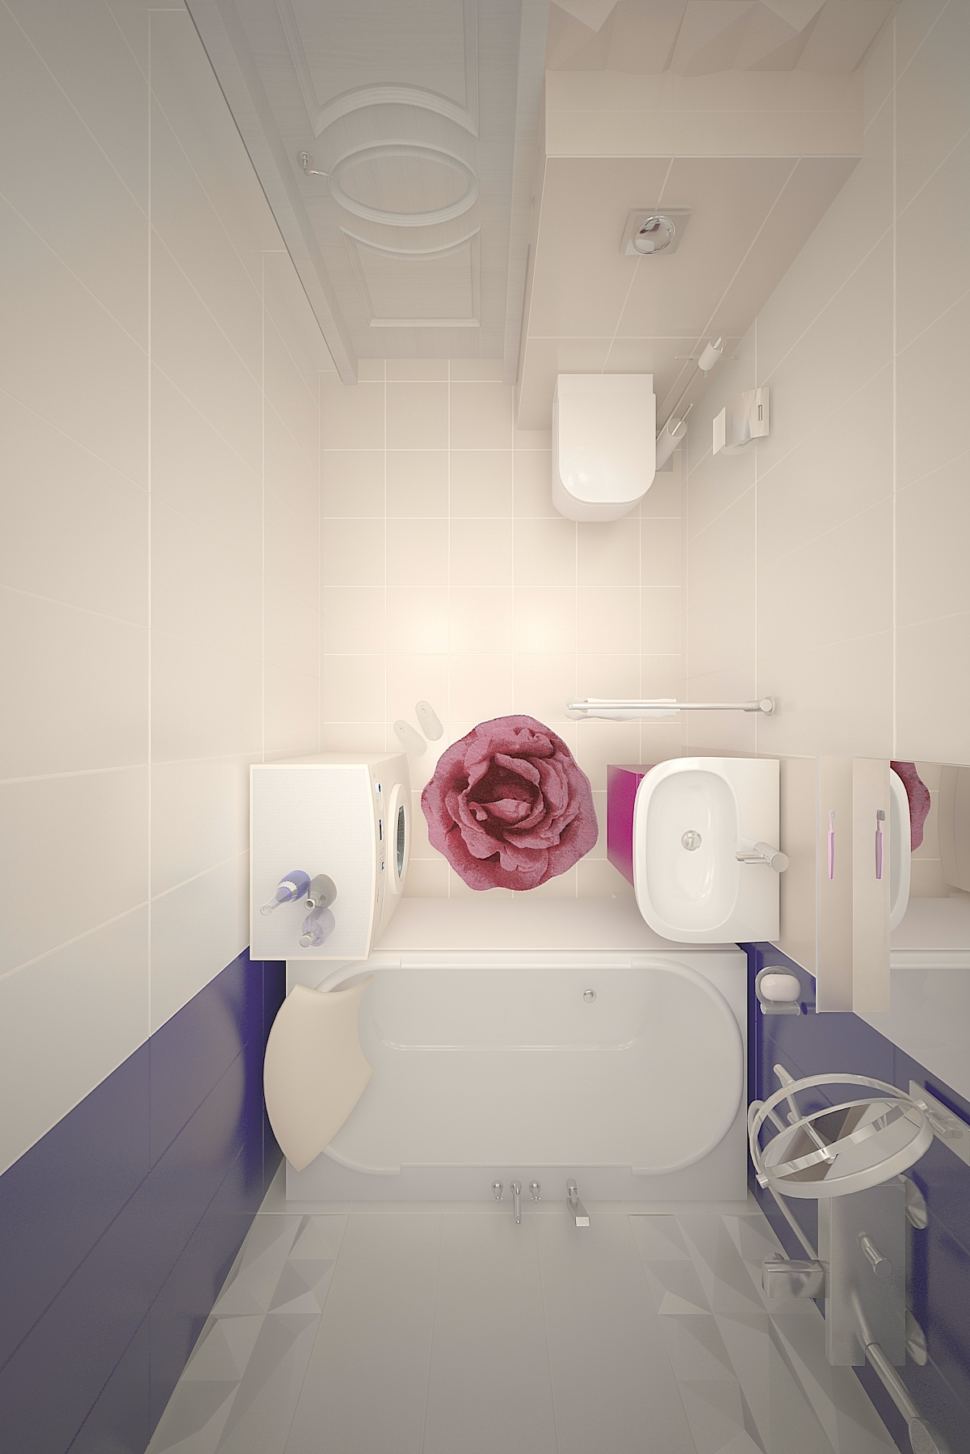 Проект ванной комнаты 3 кв.м, коврик, керамическая плитка, фиолетовый цвет, мойка, стиральная машина